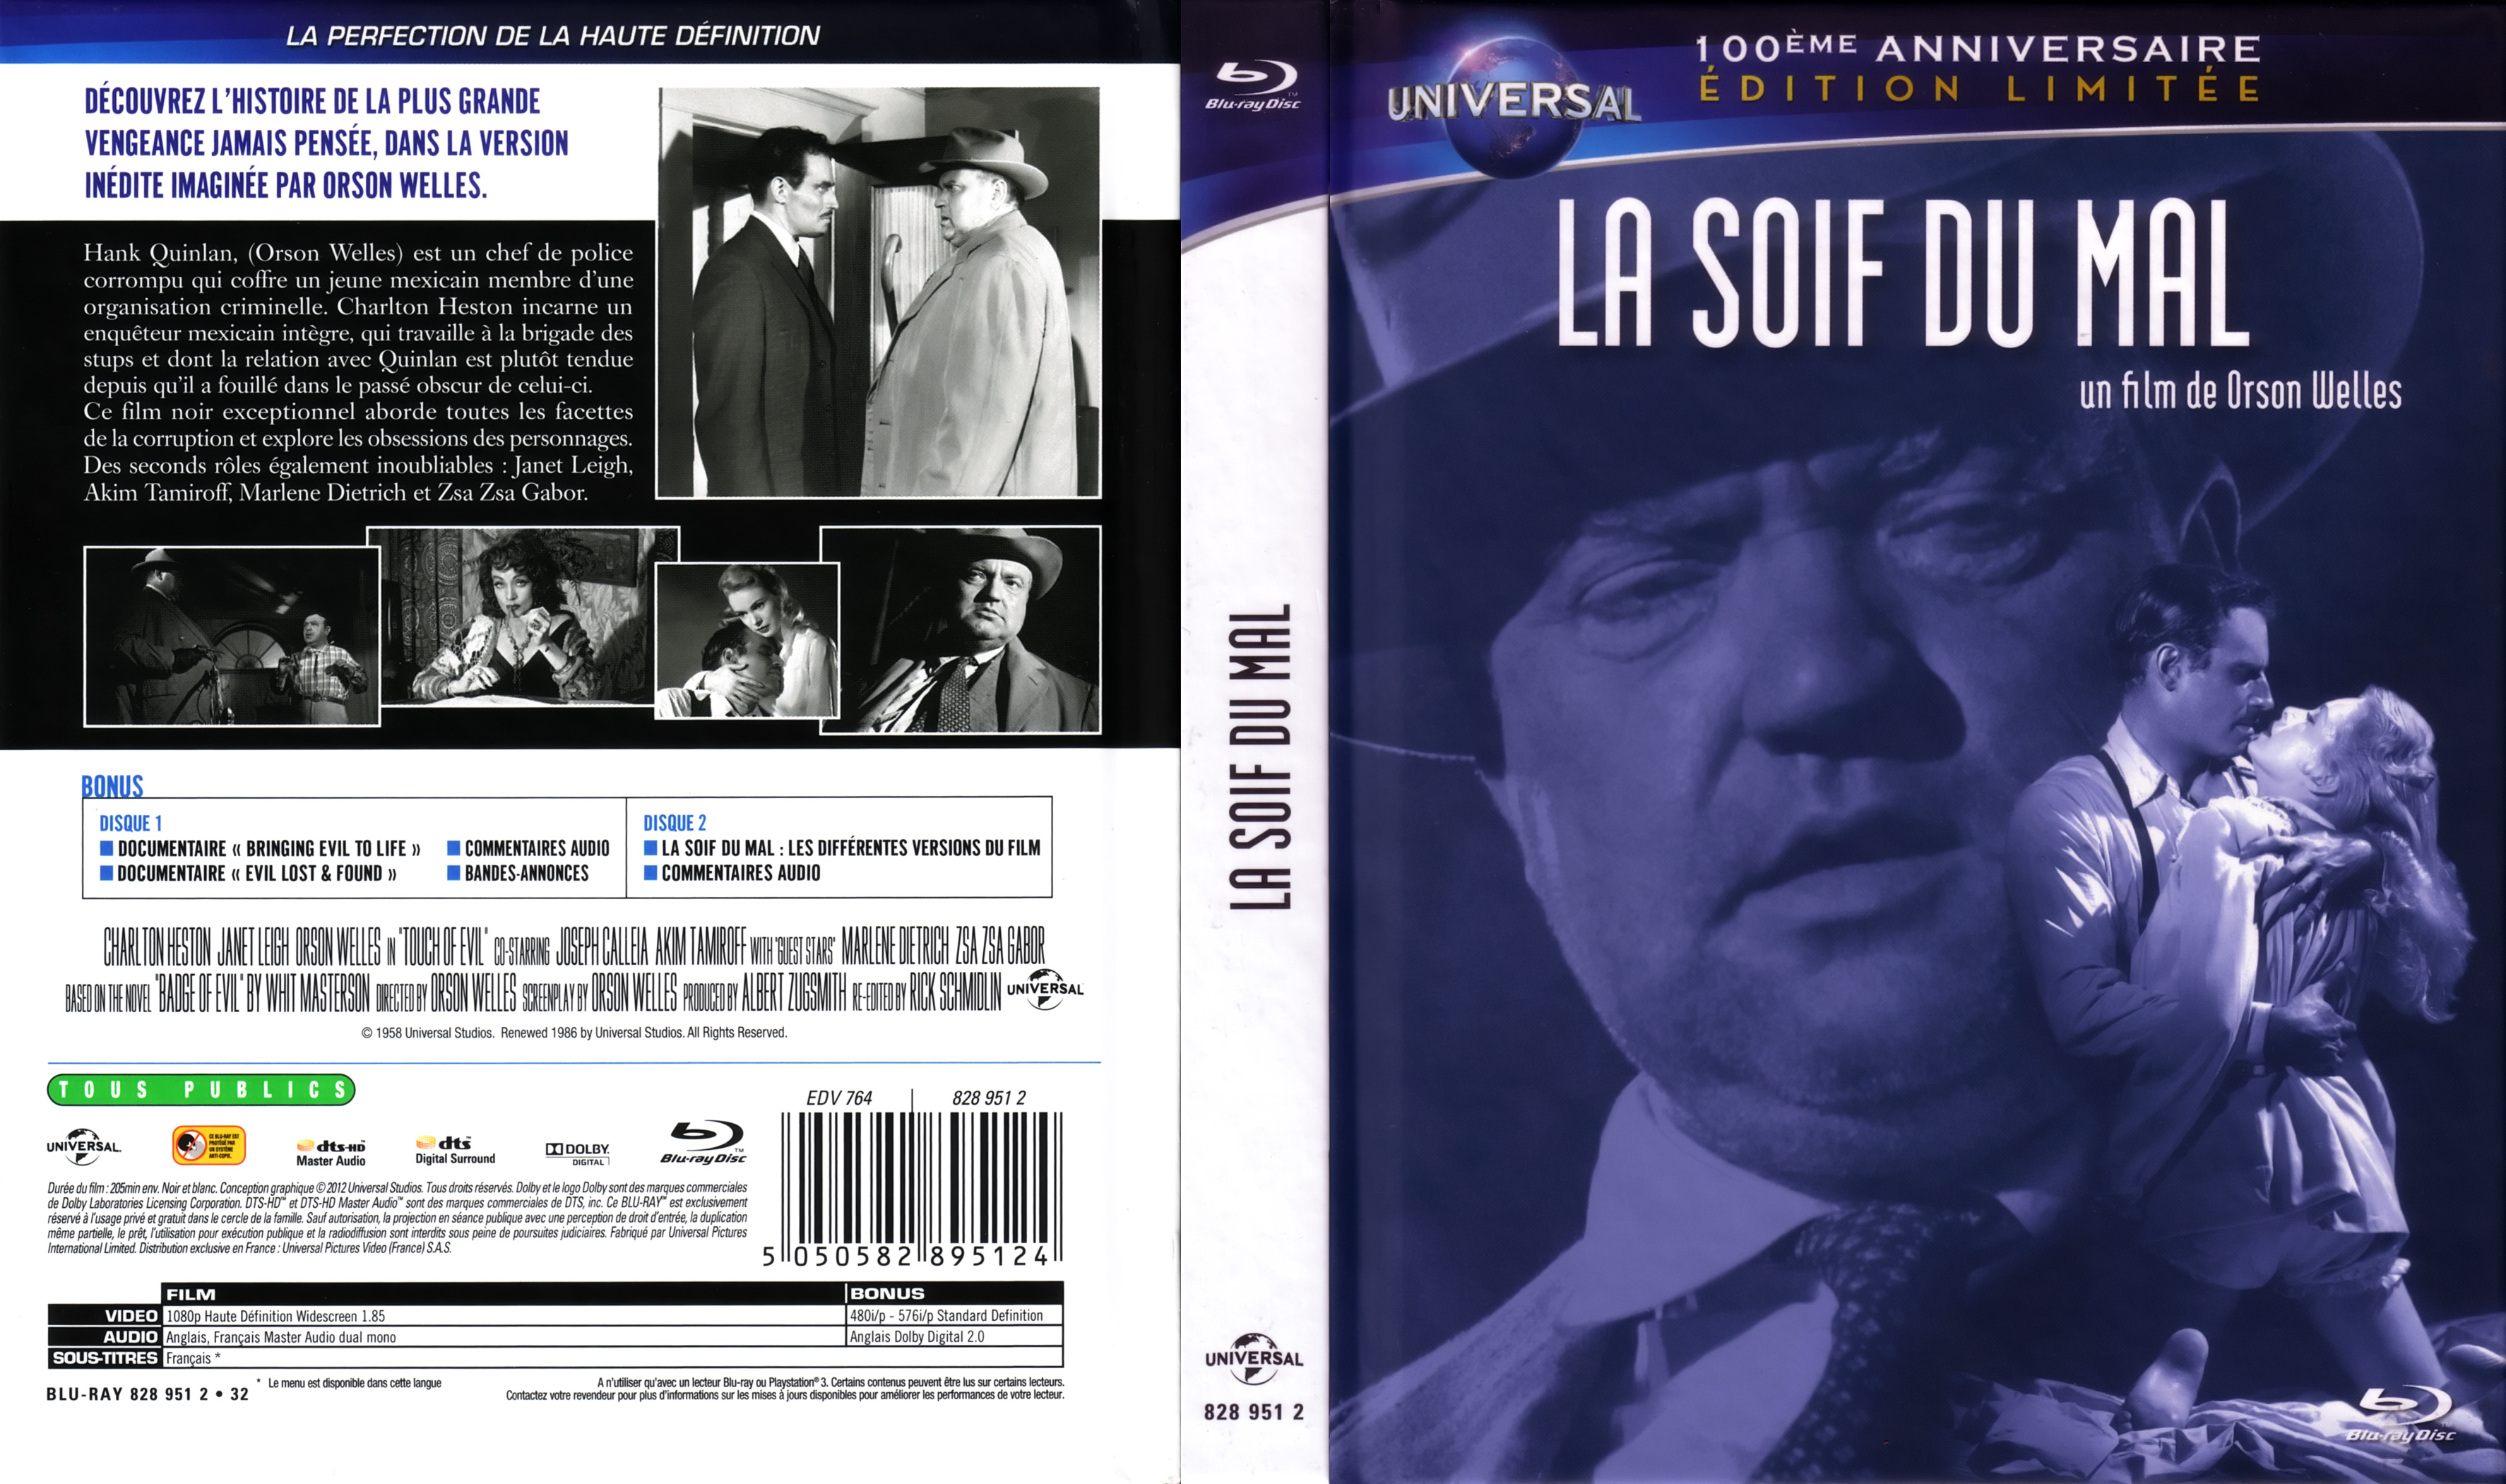 Jaquette DVD La soif du mal (BLU-RAY)